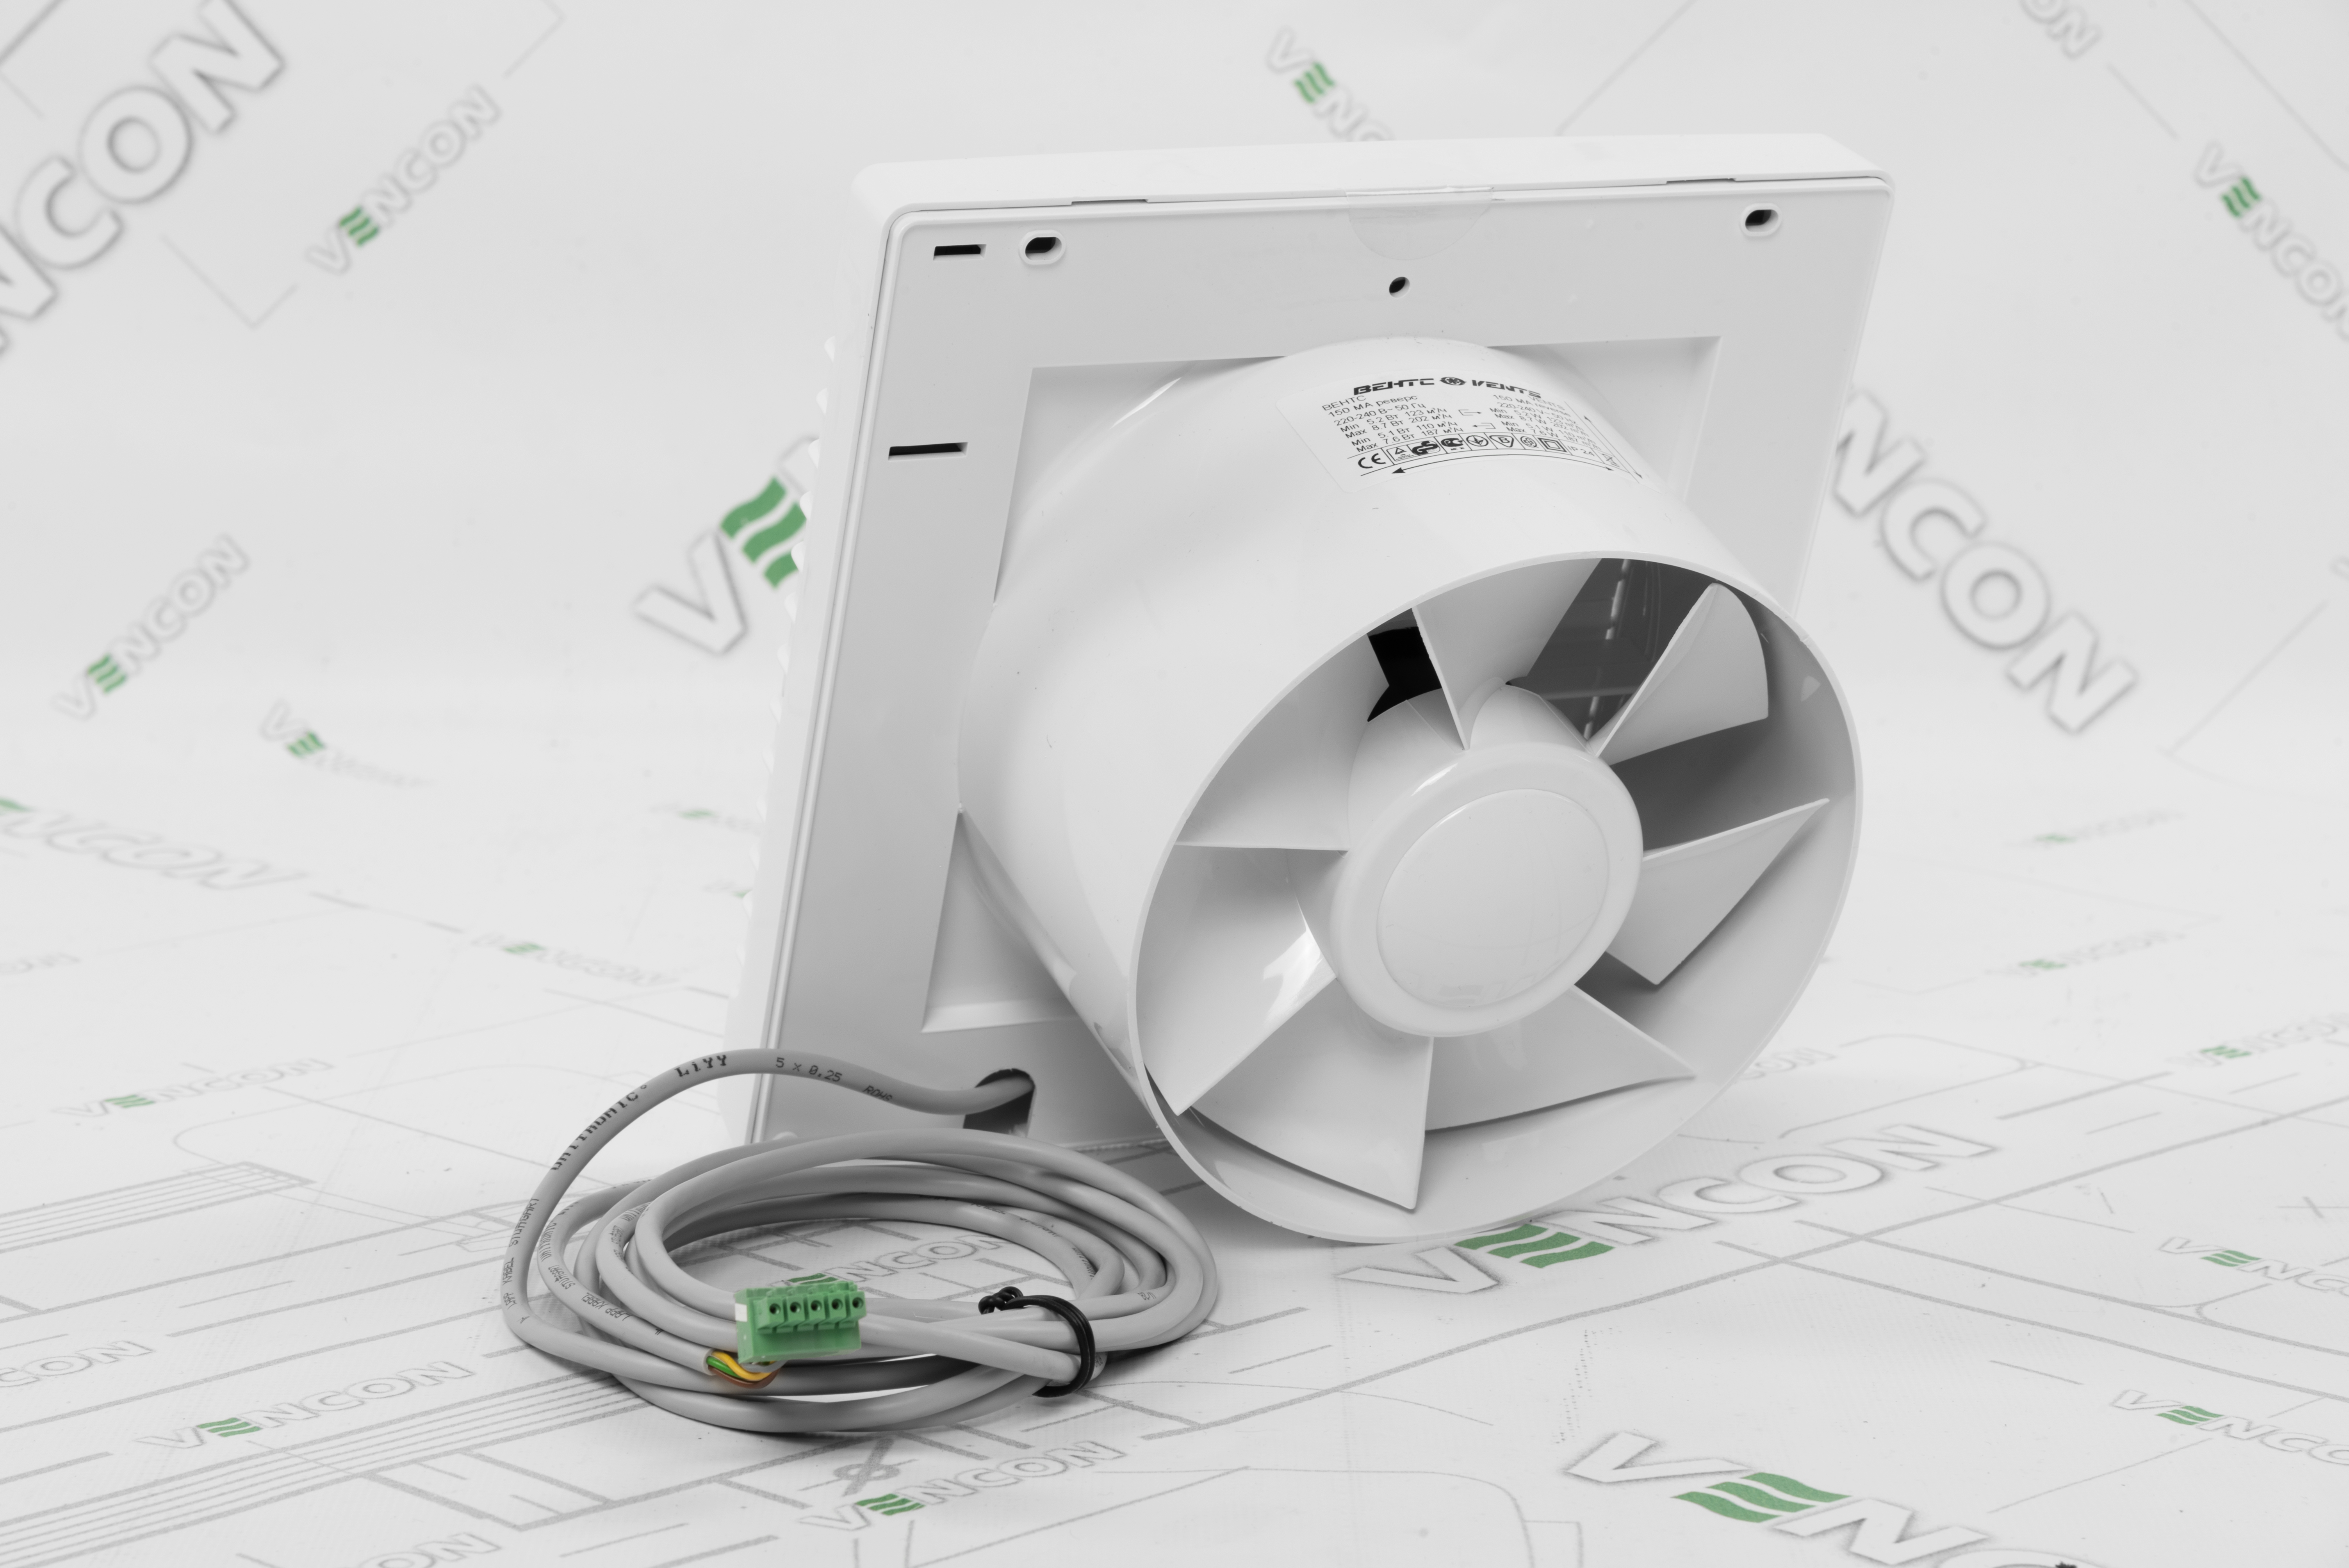 Реверсивный вентилятор Вентс 150 МА реверс отзывы - изображения 5